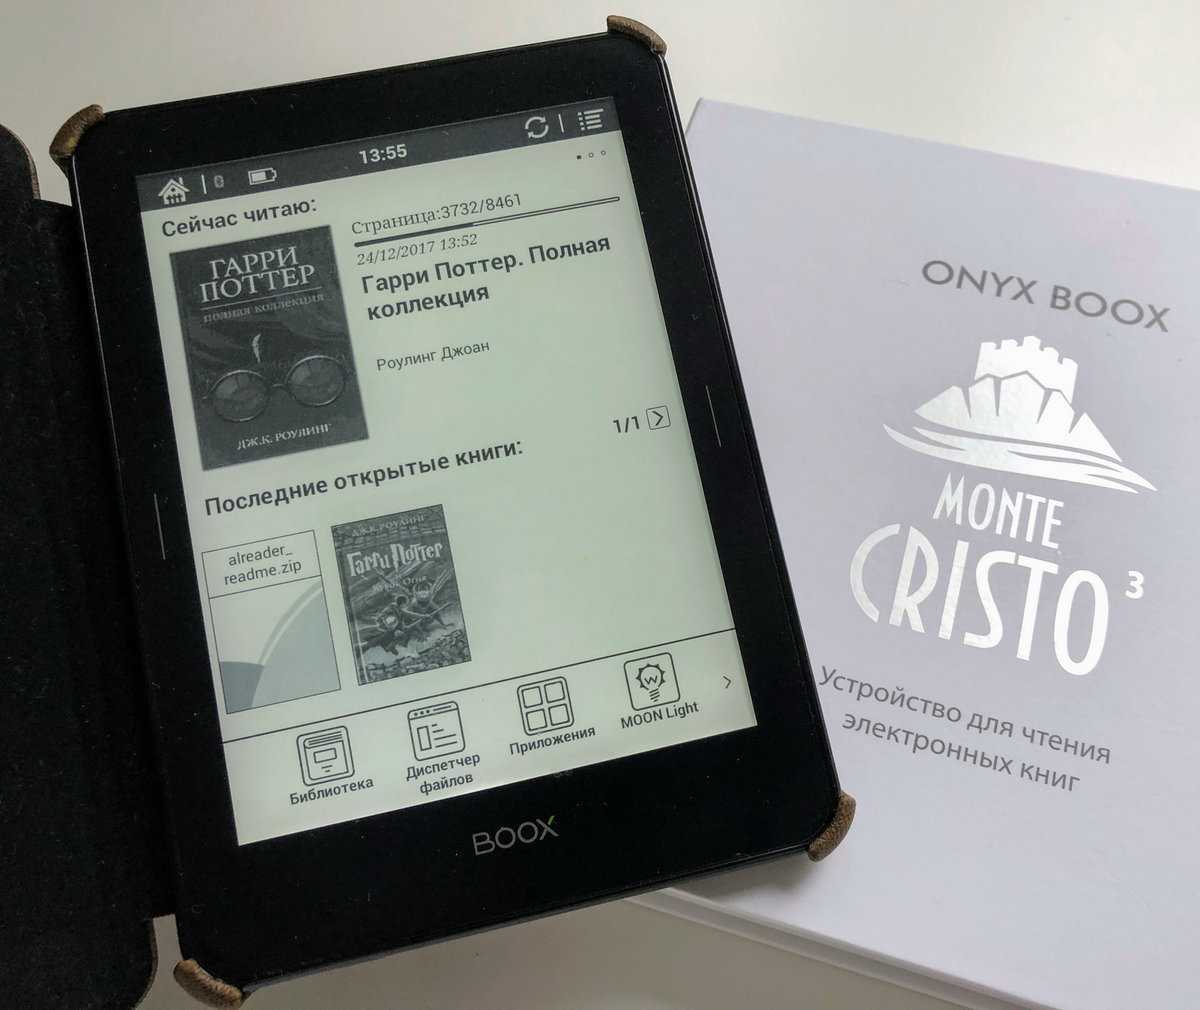 Обзор onyx boox monte cristo 3 - практически идеальная электронная книга - super g